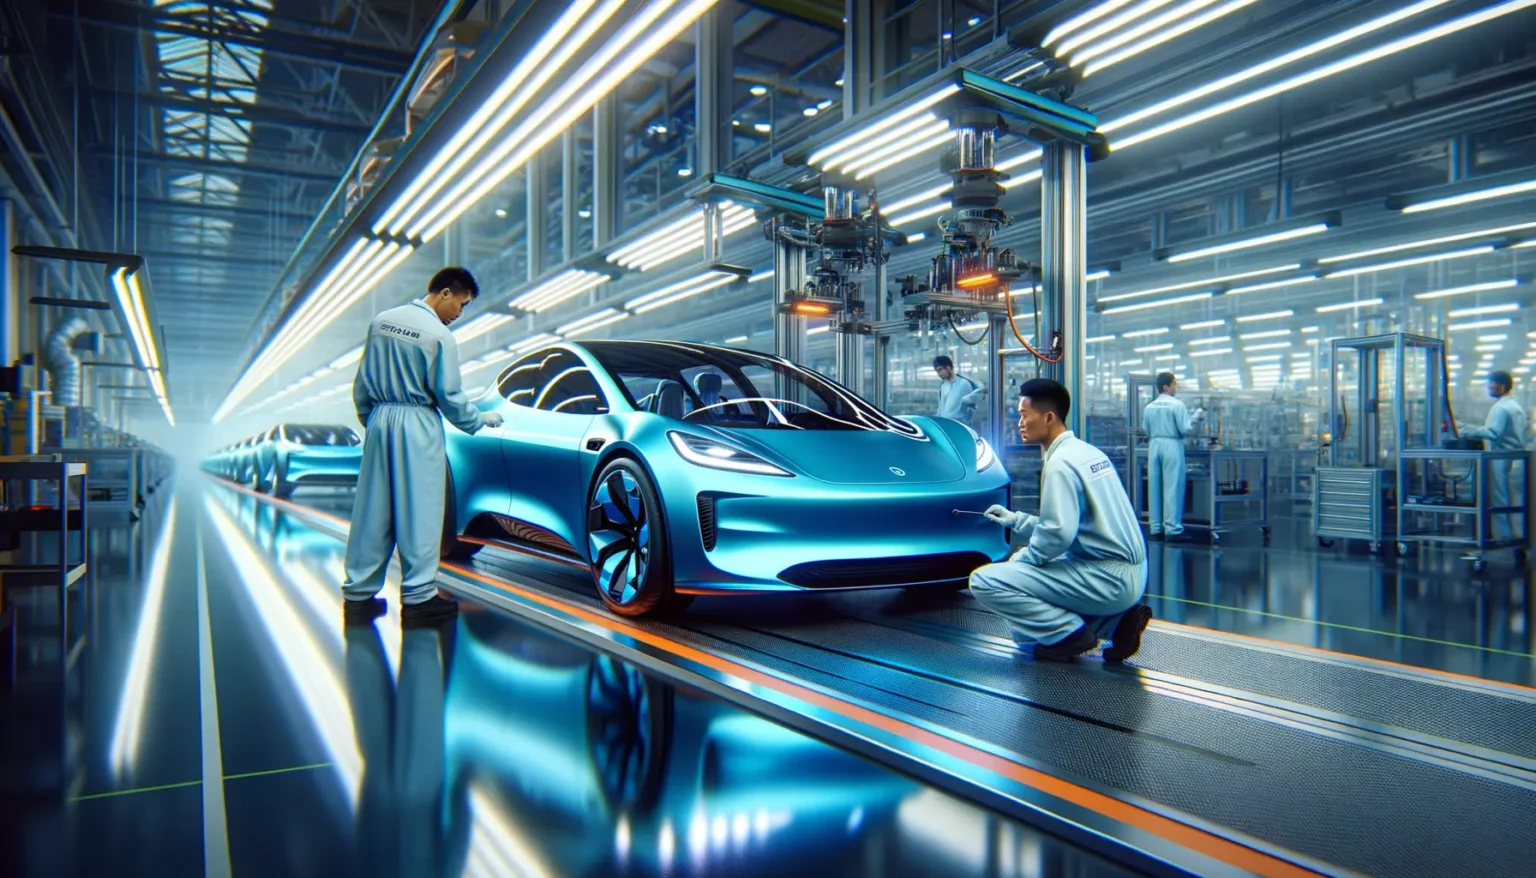 Zwei Ingenieure in weißen Overalls untersuchen ein futuristisches blaues Auto in einer hochmodernen Automobilfertigungsanlage mit leuchtenden Neonlichtern und fortgeschrittenen Roboterarmen im Hintergrund.